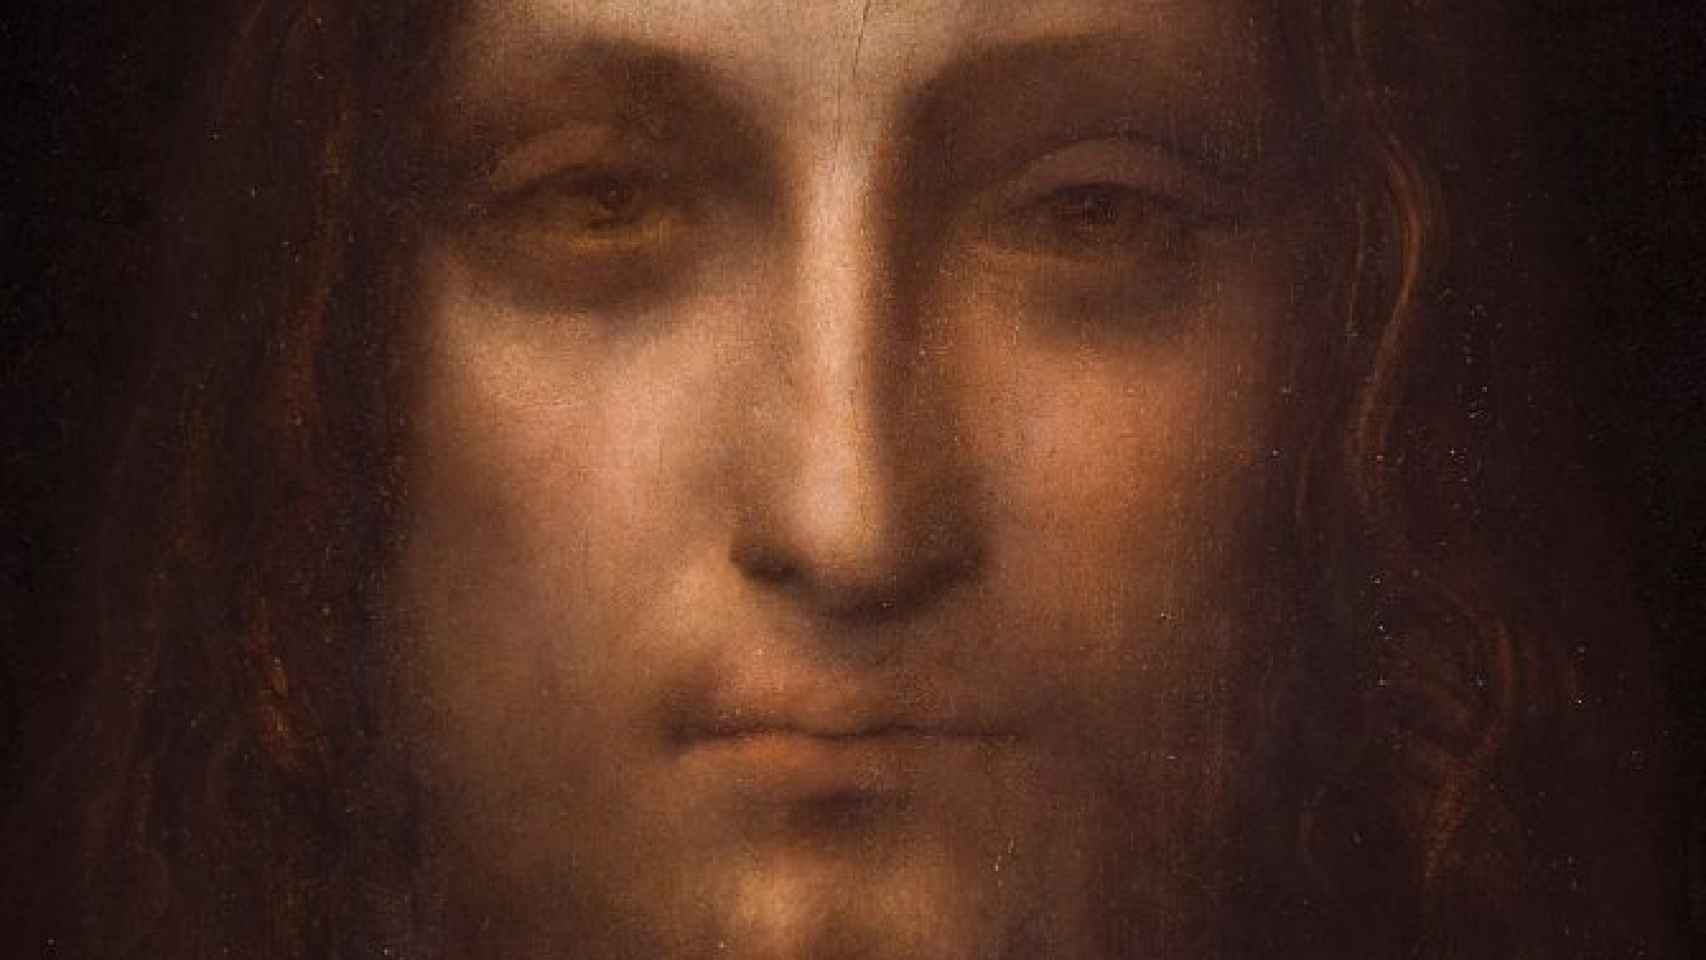 La cara del 'Salvator Mundi' pintado por Leonardo da Vinci.